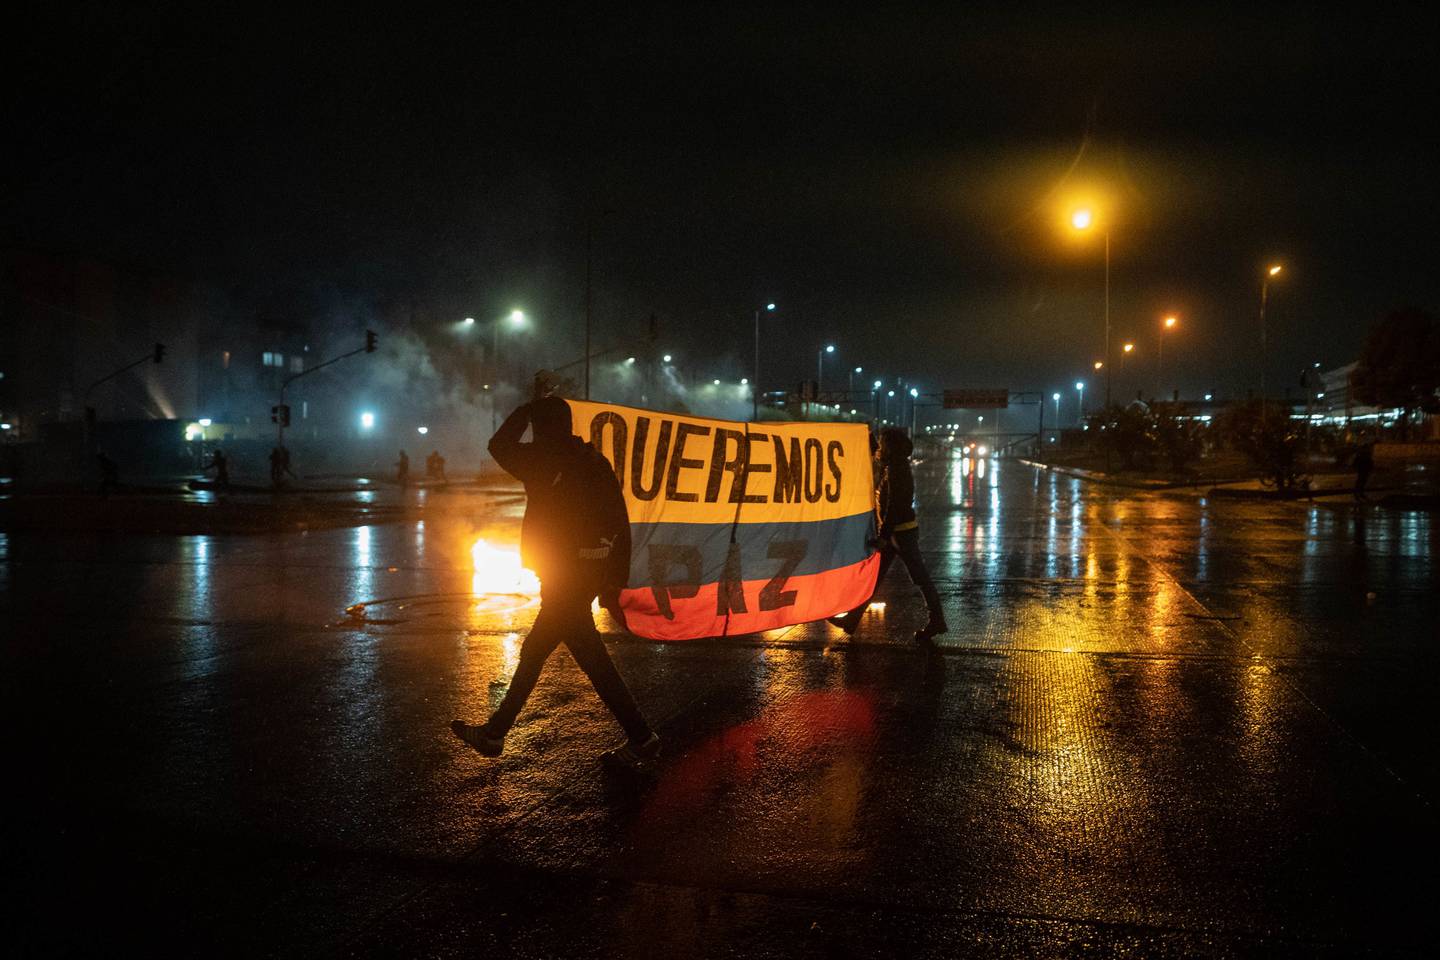 Los manifestantes sostienen una bandera colombiana que dice "queremos la paz" durante una protesta en Bogotá, Colombia, el viernes 28 de mayo de 2021.